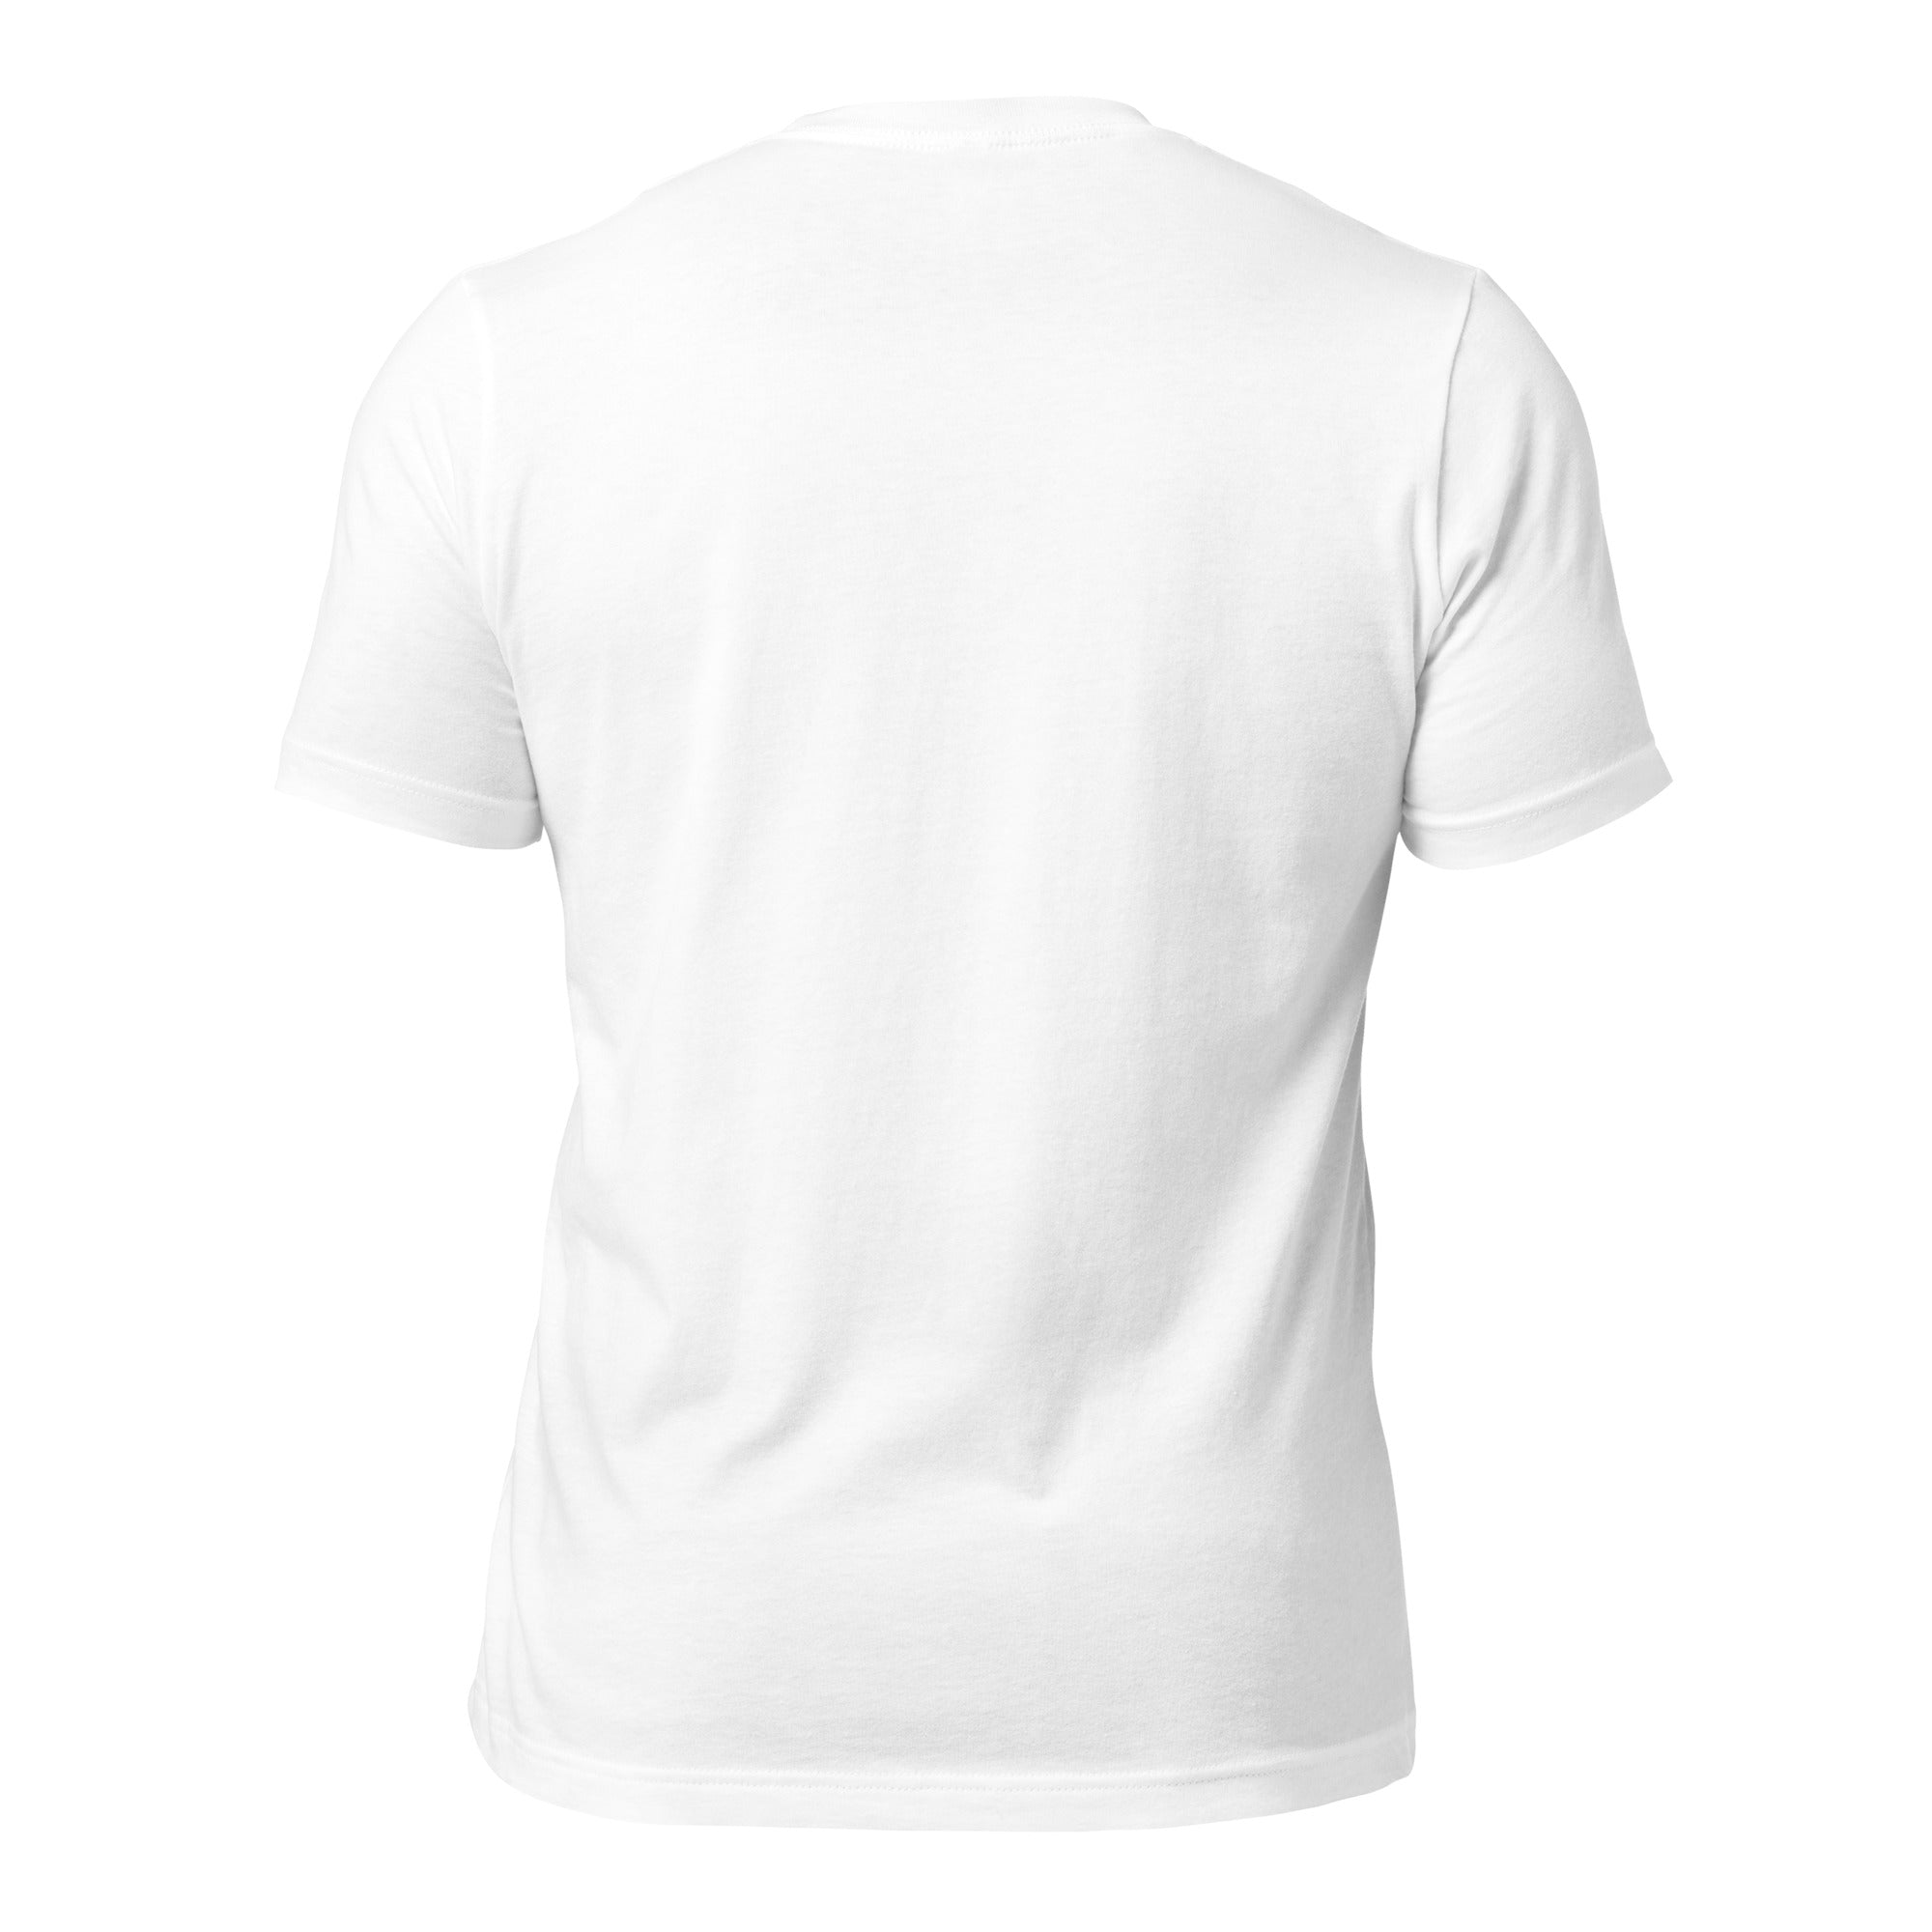 Whippet - Short Sleeve Cotton Tee  Shirt